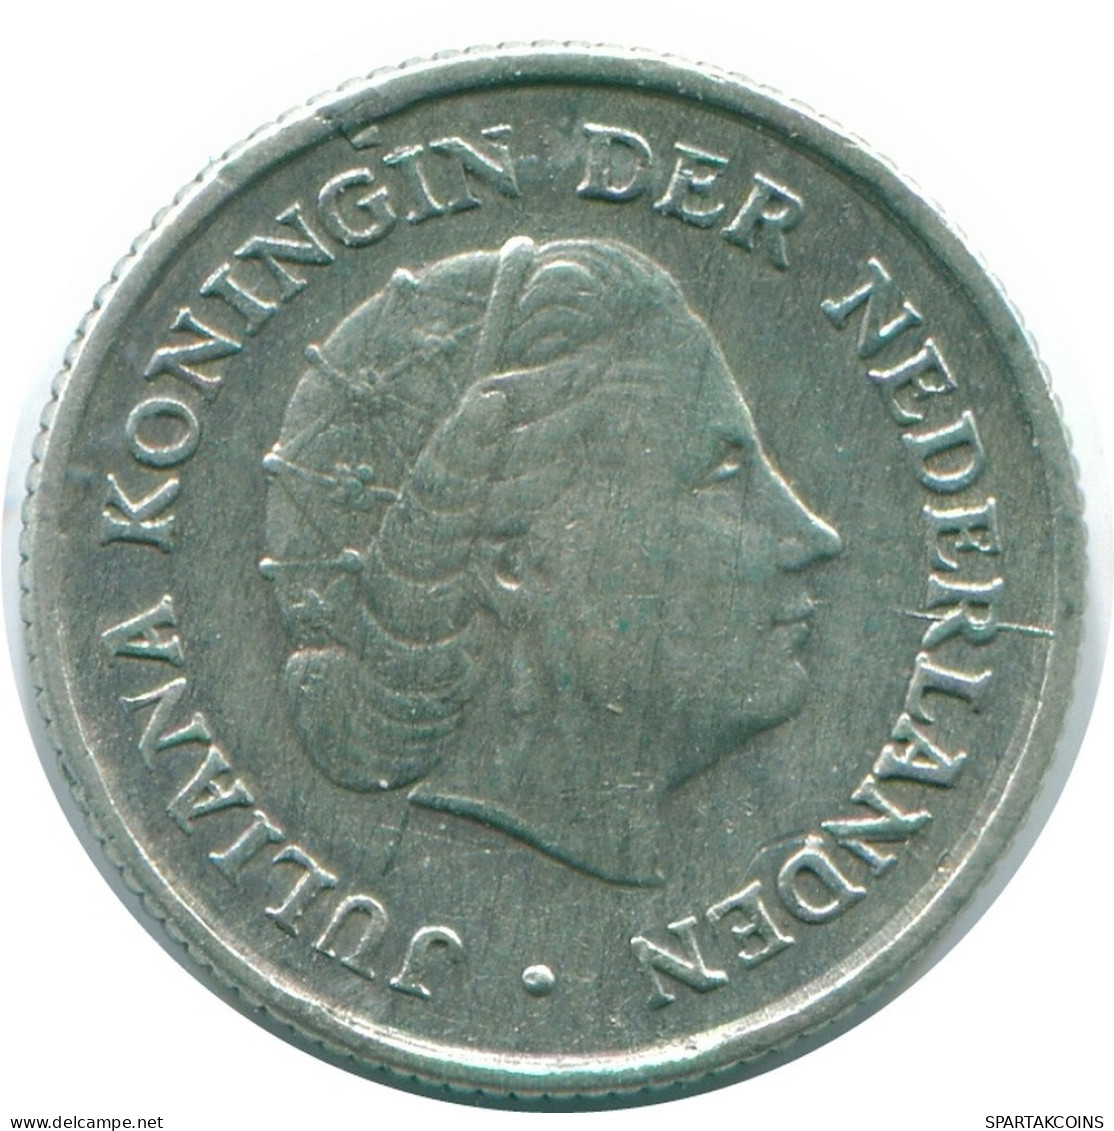 1/10 GULDEN 1963 NIEDERLÄNDISCHE ANTILLEN SILBER Koloniale Münze #NL12558.3.D.A - Niederländische Antillen